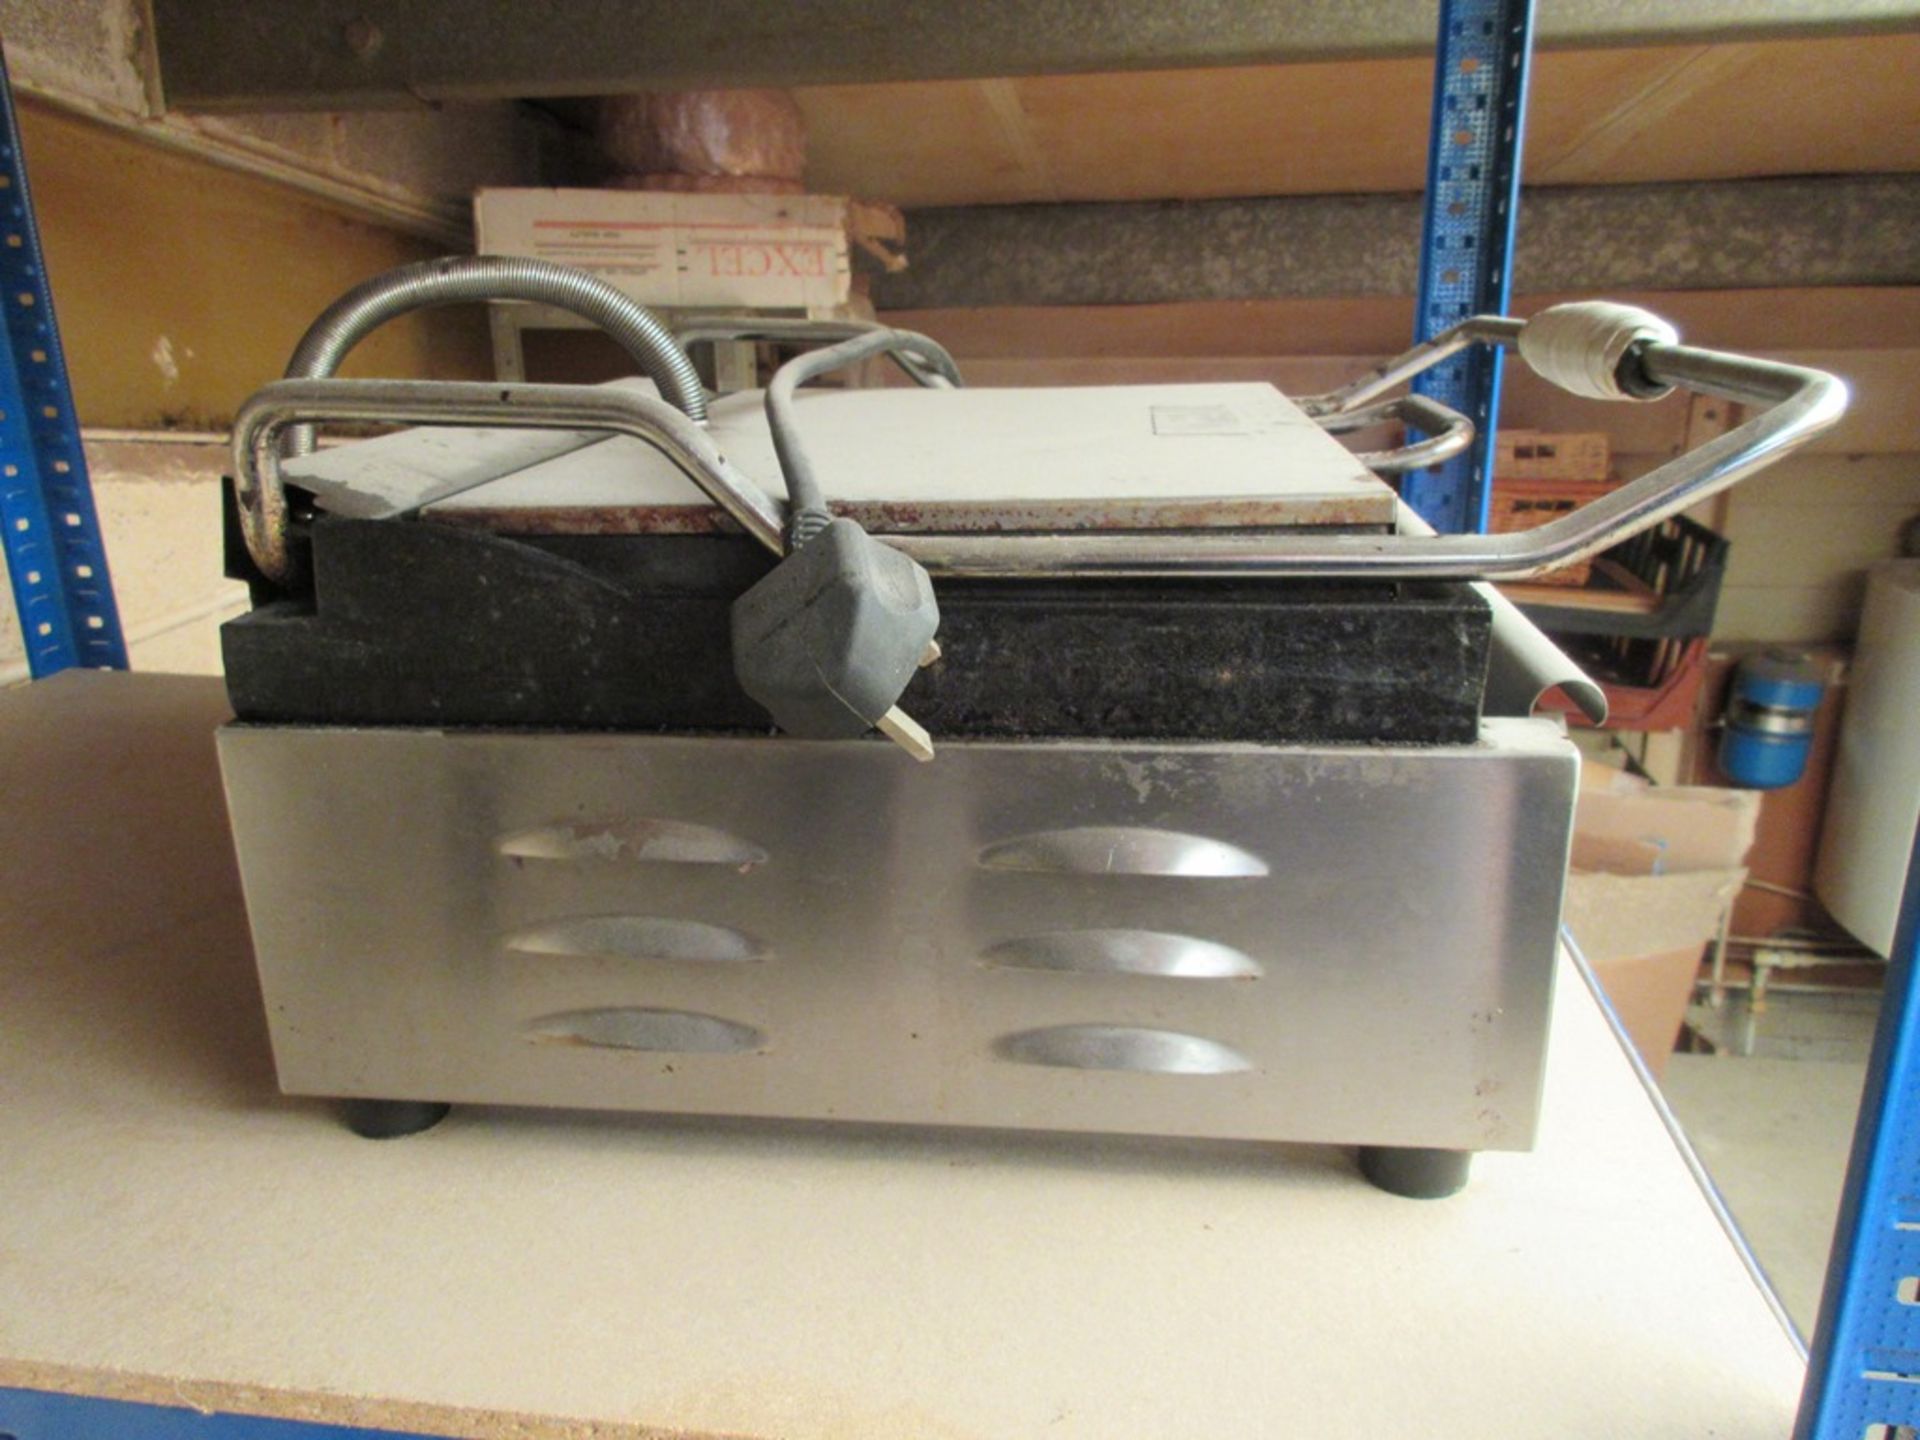 Buffalo bench top panini machine, model L519-B, serial no. 201410024784 - Image 2 of 5